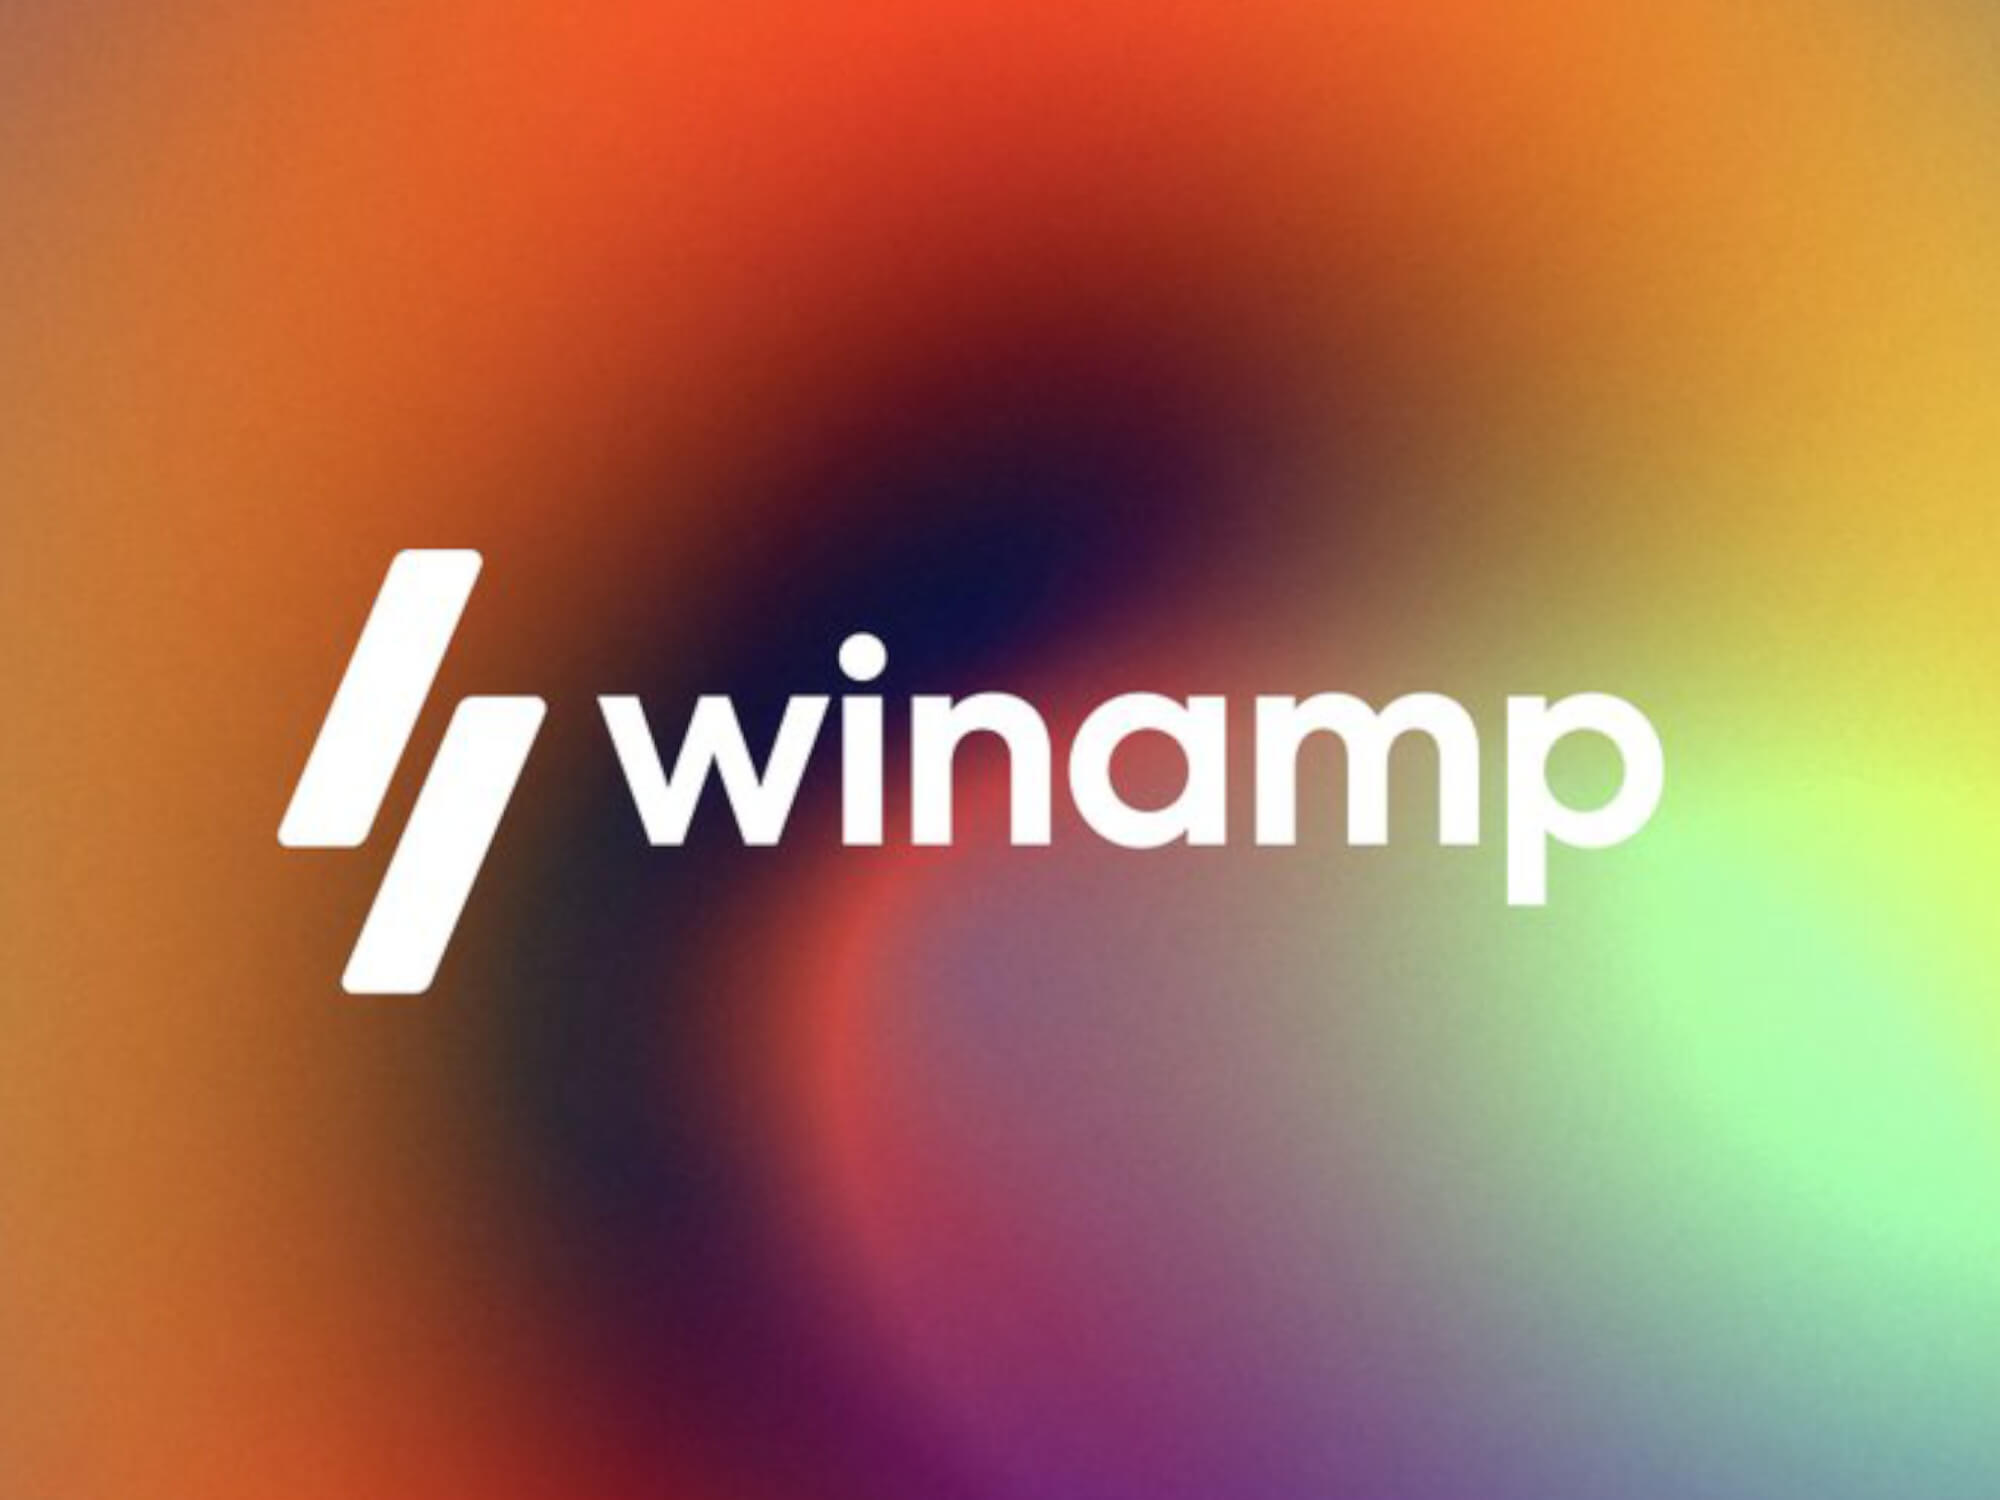 Ressurge das cinzas: Winamp volta como plataforma de streaming e apoio a artistas